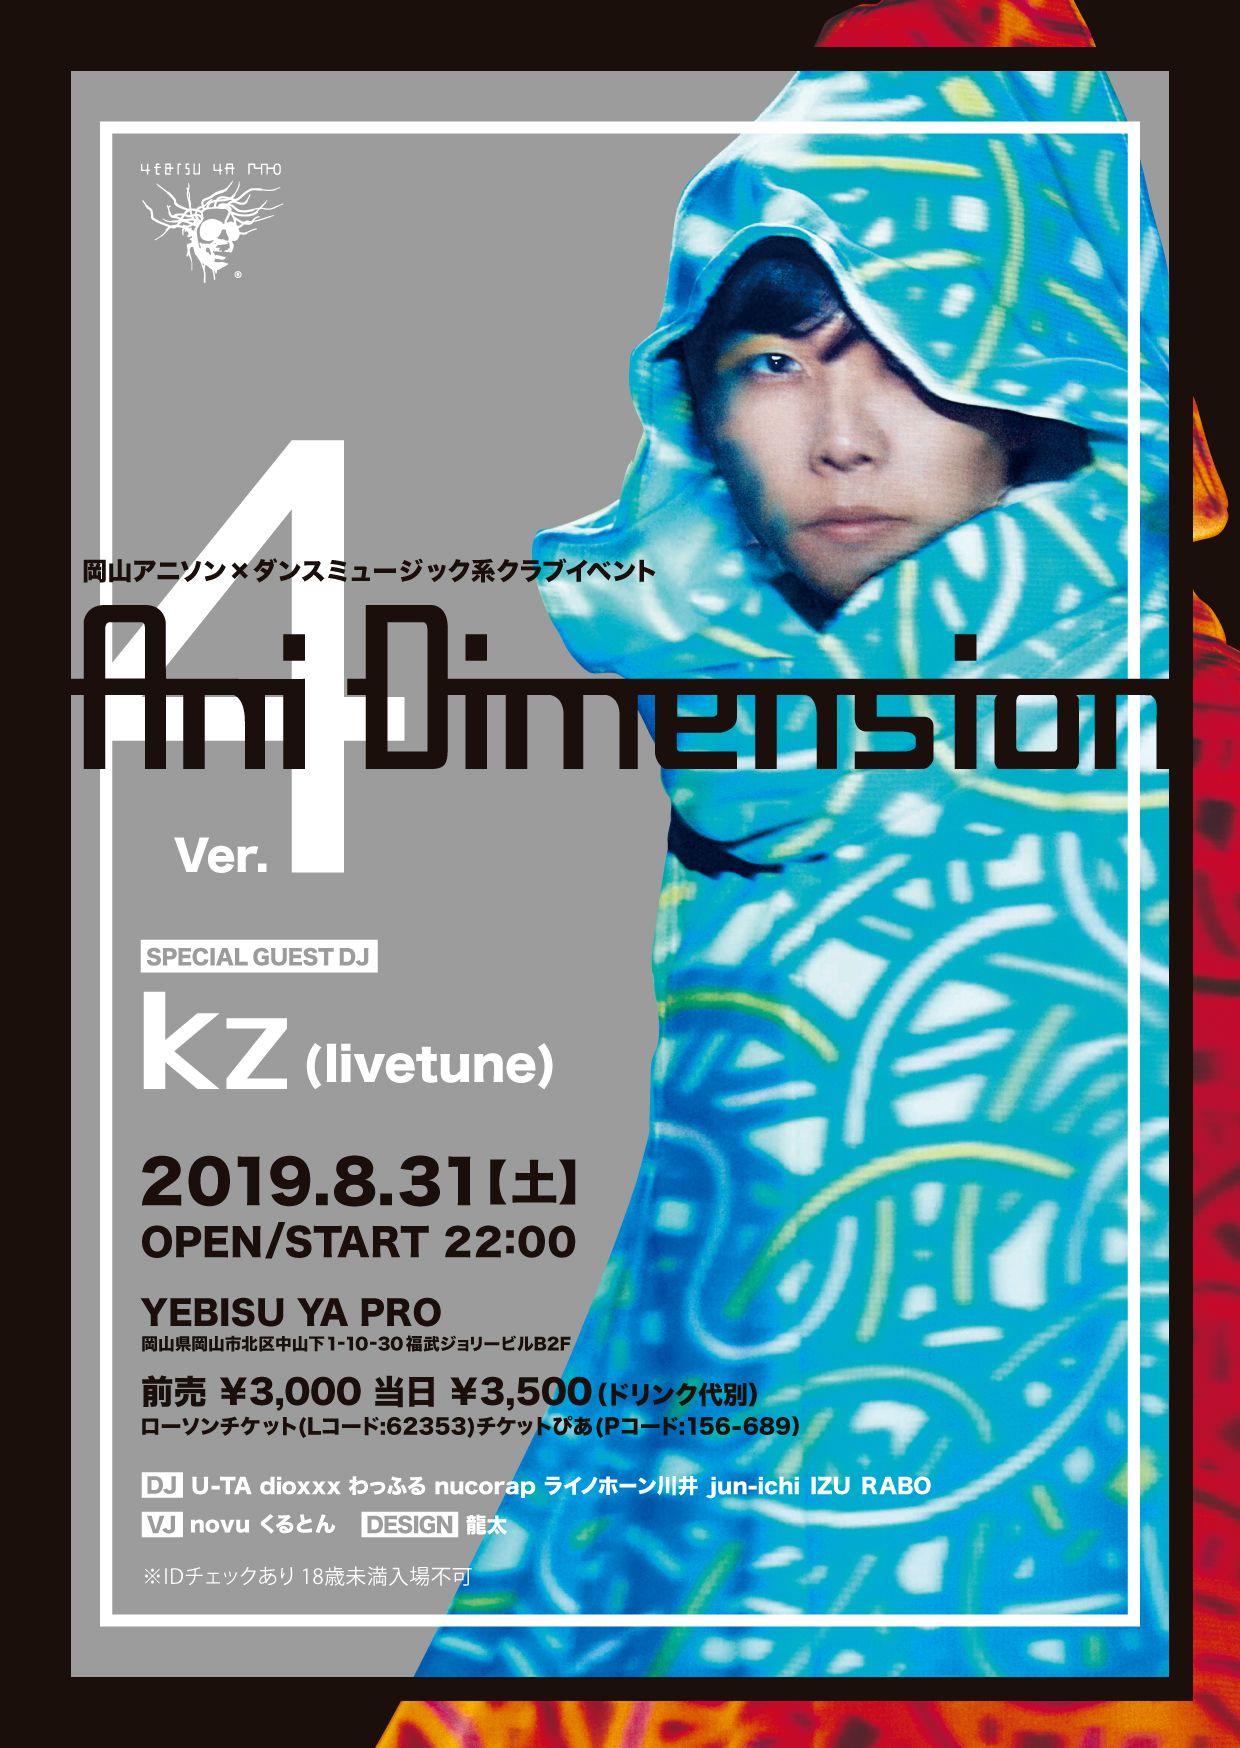 岡山アニソン×ダンスミュージック系クラブイベント『Ani Dimension Ver.4』